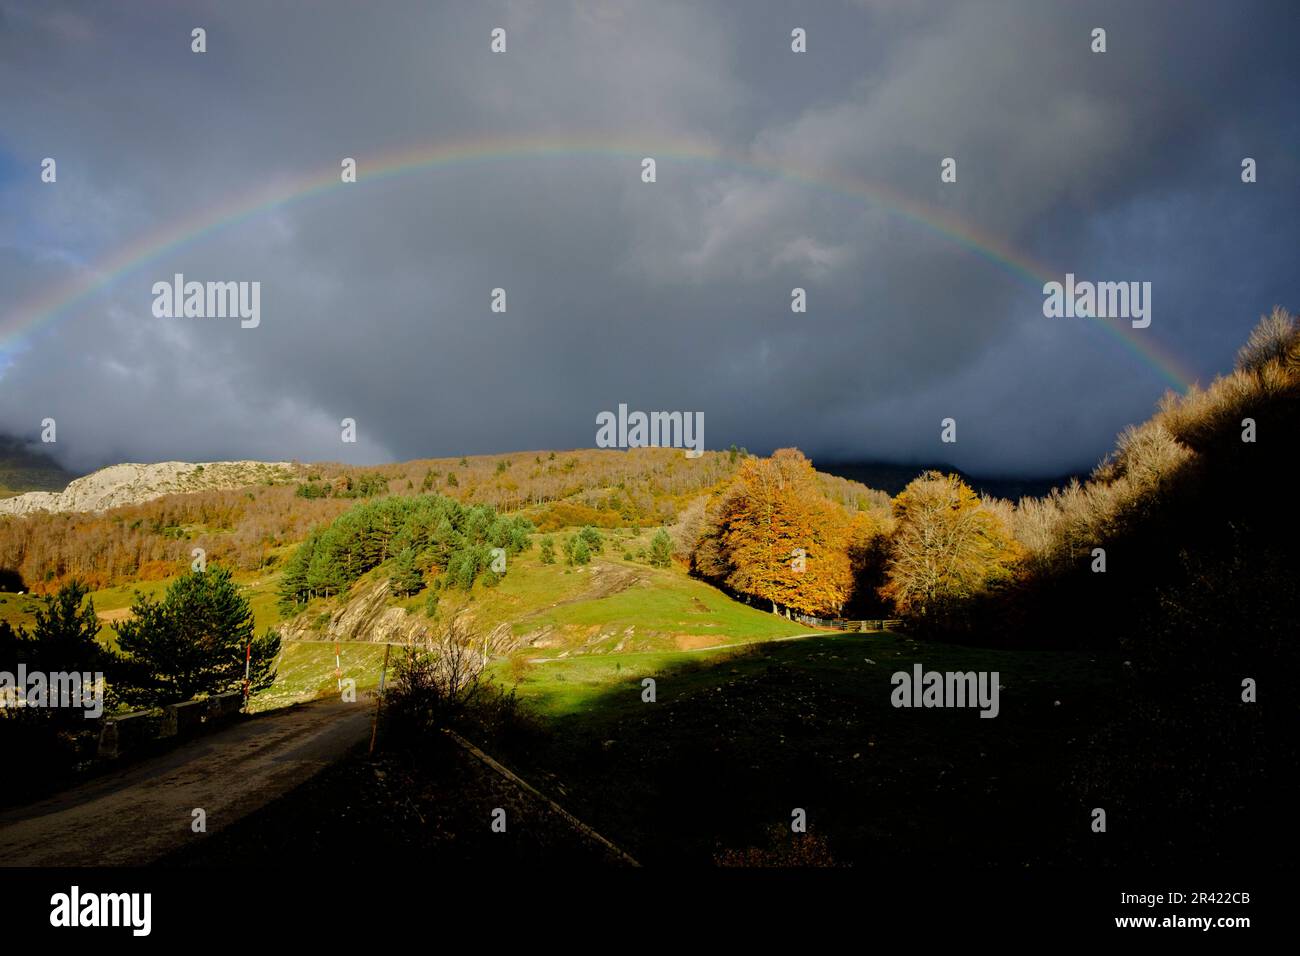 arcoiris sobre el barranco de Petrachema, Linza, Parque natural de los Valles Occidentales, Huesca, cordillera de los pirineos, Spain, Europe. Stock Photo